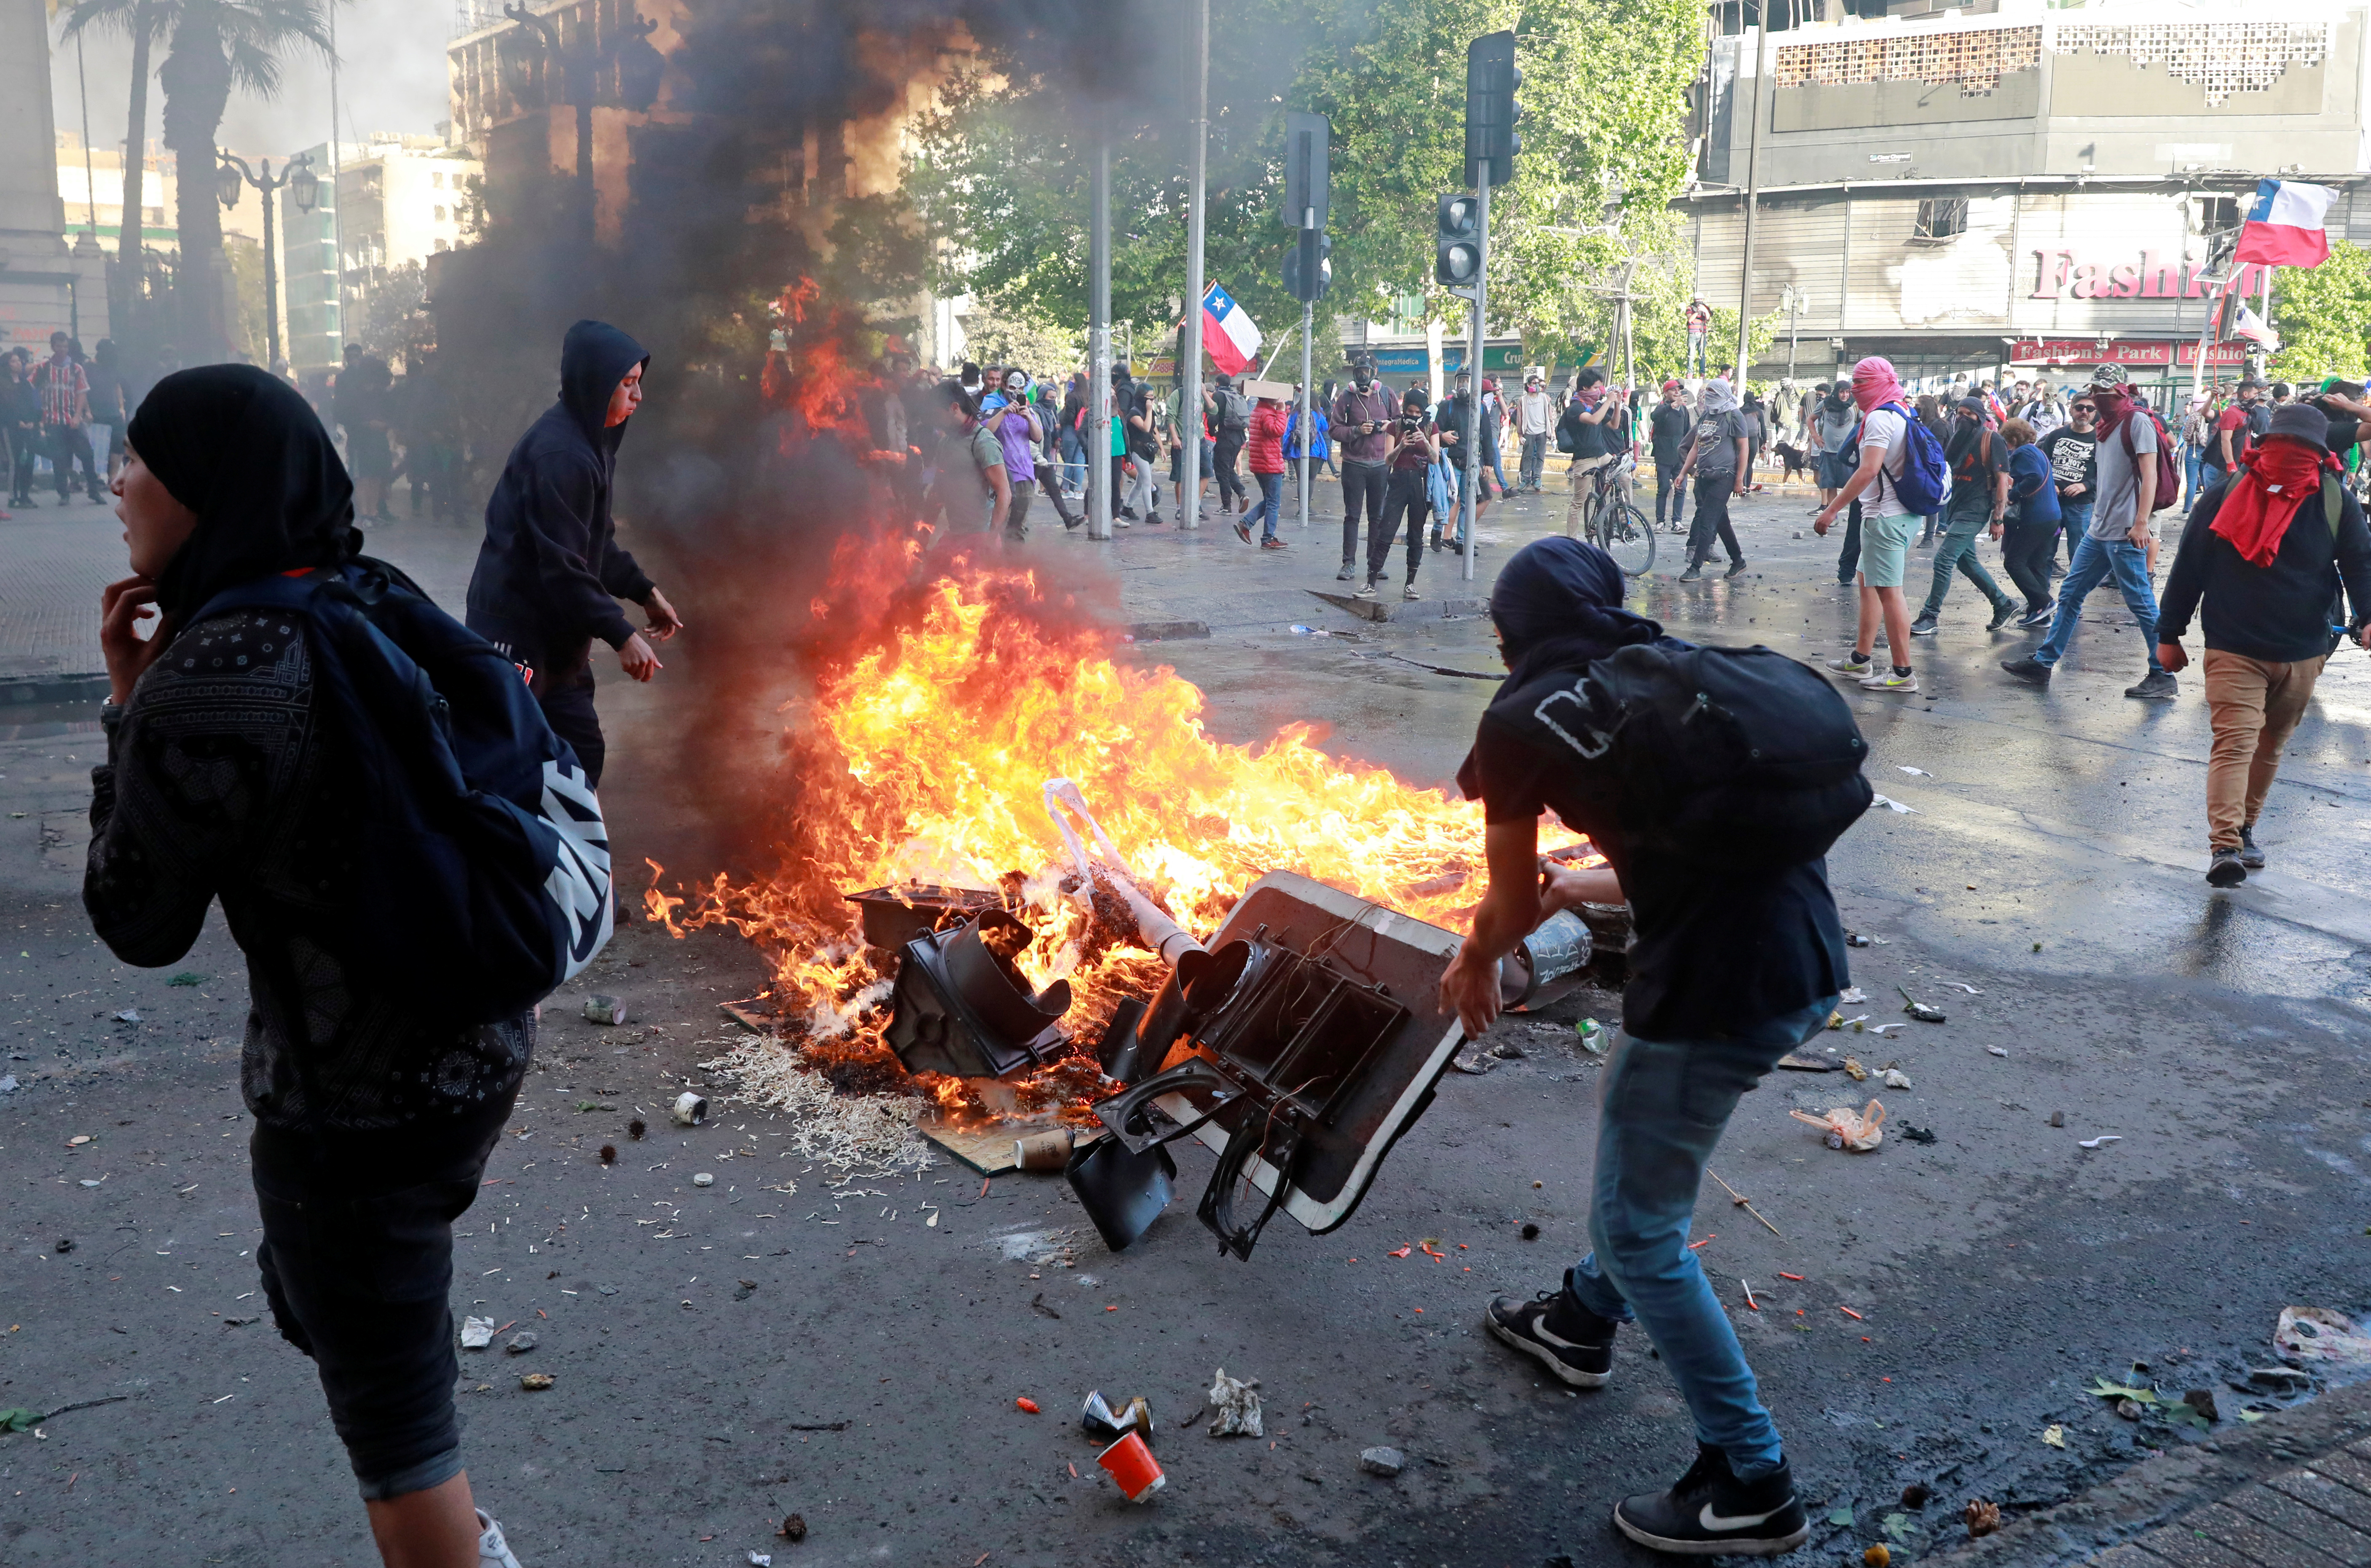 Χιλή: Συνεχίστηκαν οι διαδηλώσεις στο Σαντιάγο και άλλες πόλεις – Νέα επεισόδια